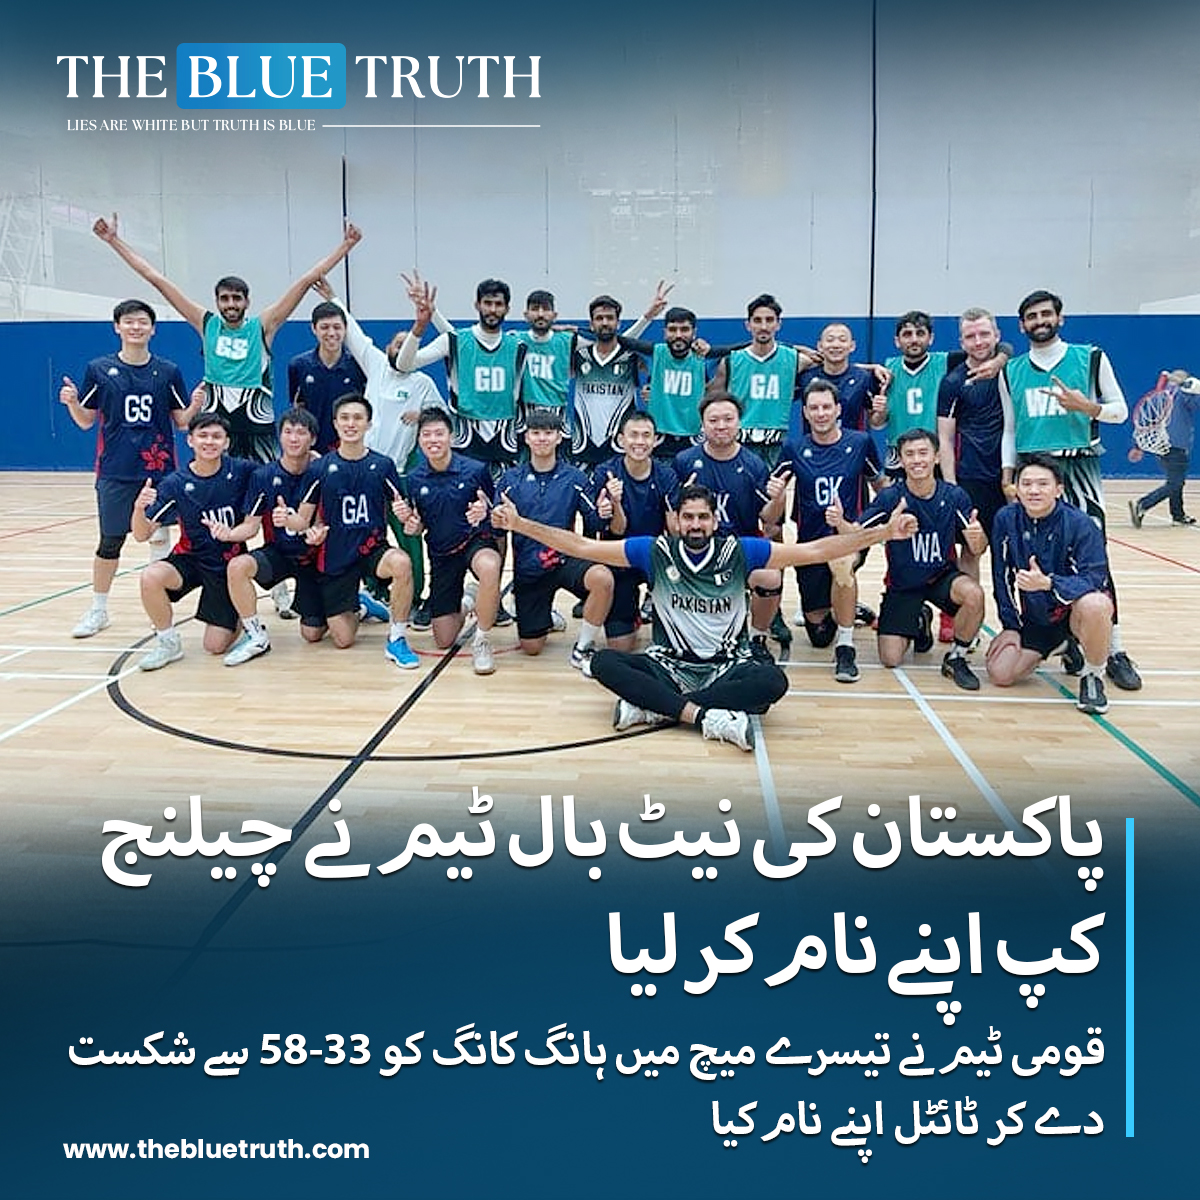 پاکستان کی نیٹ بال ٹیم نے چیلنج کپ اپنے نام کر لیا.
قومی ٹیم نے تیسرے میچ میں ہانگ کانگ کو 33-58 سے شکست دے کر ٹائٹل اپنے نام کیا.
#NetballChampions #PakistanNetball #ChallengeCupWinners
#VictoryCelebration #TeamPakistan #NetballTriumph
#SportsAchievement #tbt #TheBlueTruth